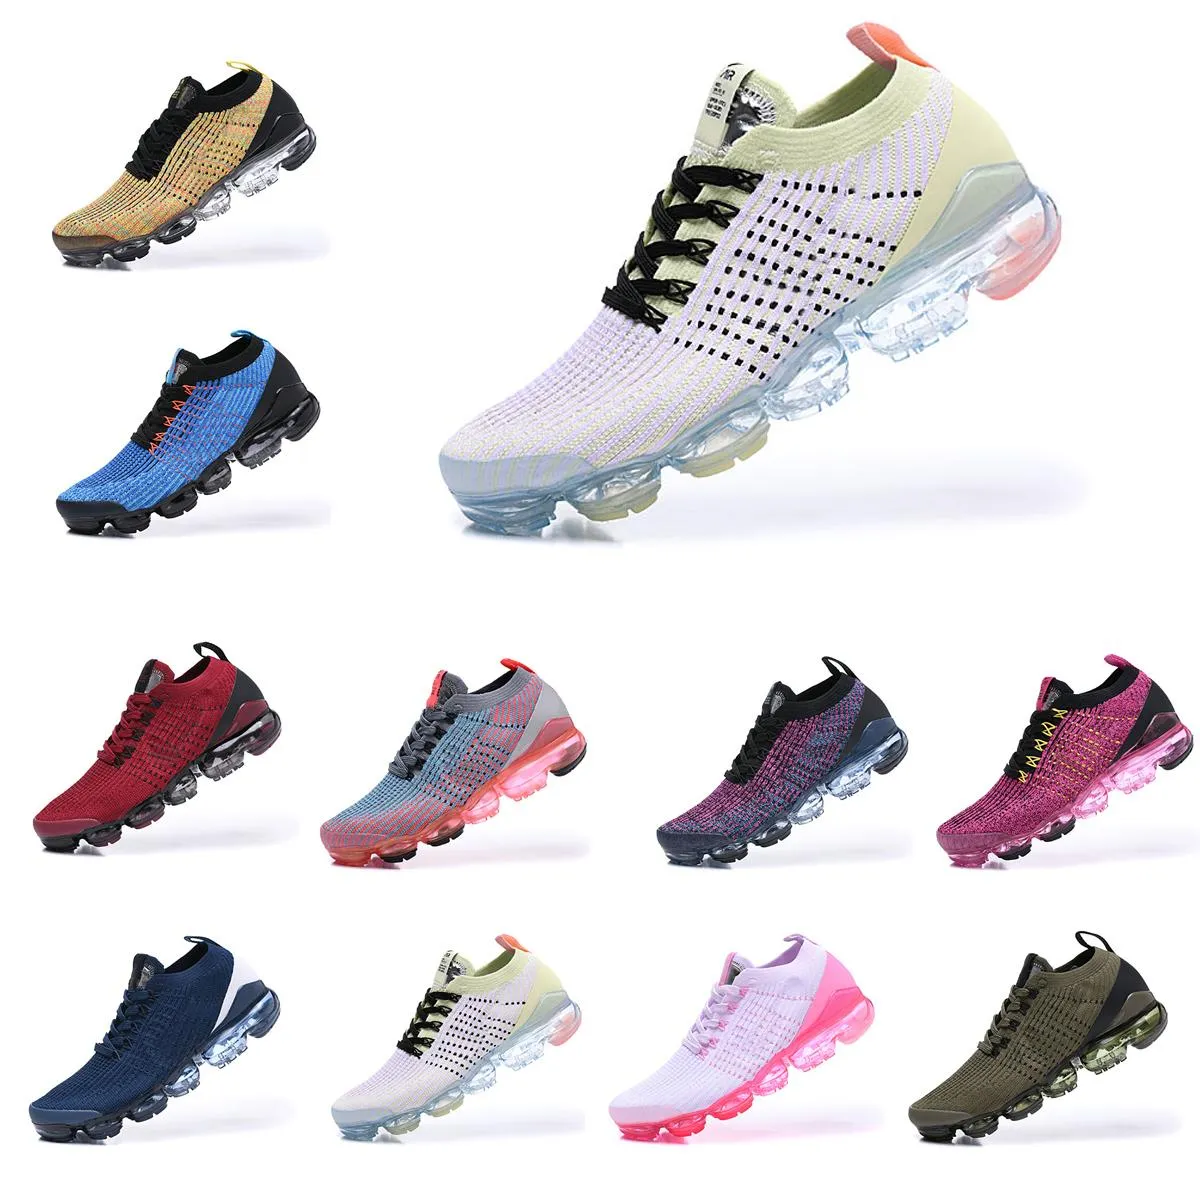 Avec Box 2019 Top Qualité Hommes Chaussures De Course 3.0 Casual Chaussures Hommes Femmes Mode Athlétique Sport Designers De Chaussures Corss Maxes Chaussures Taille 36-45